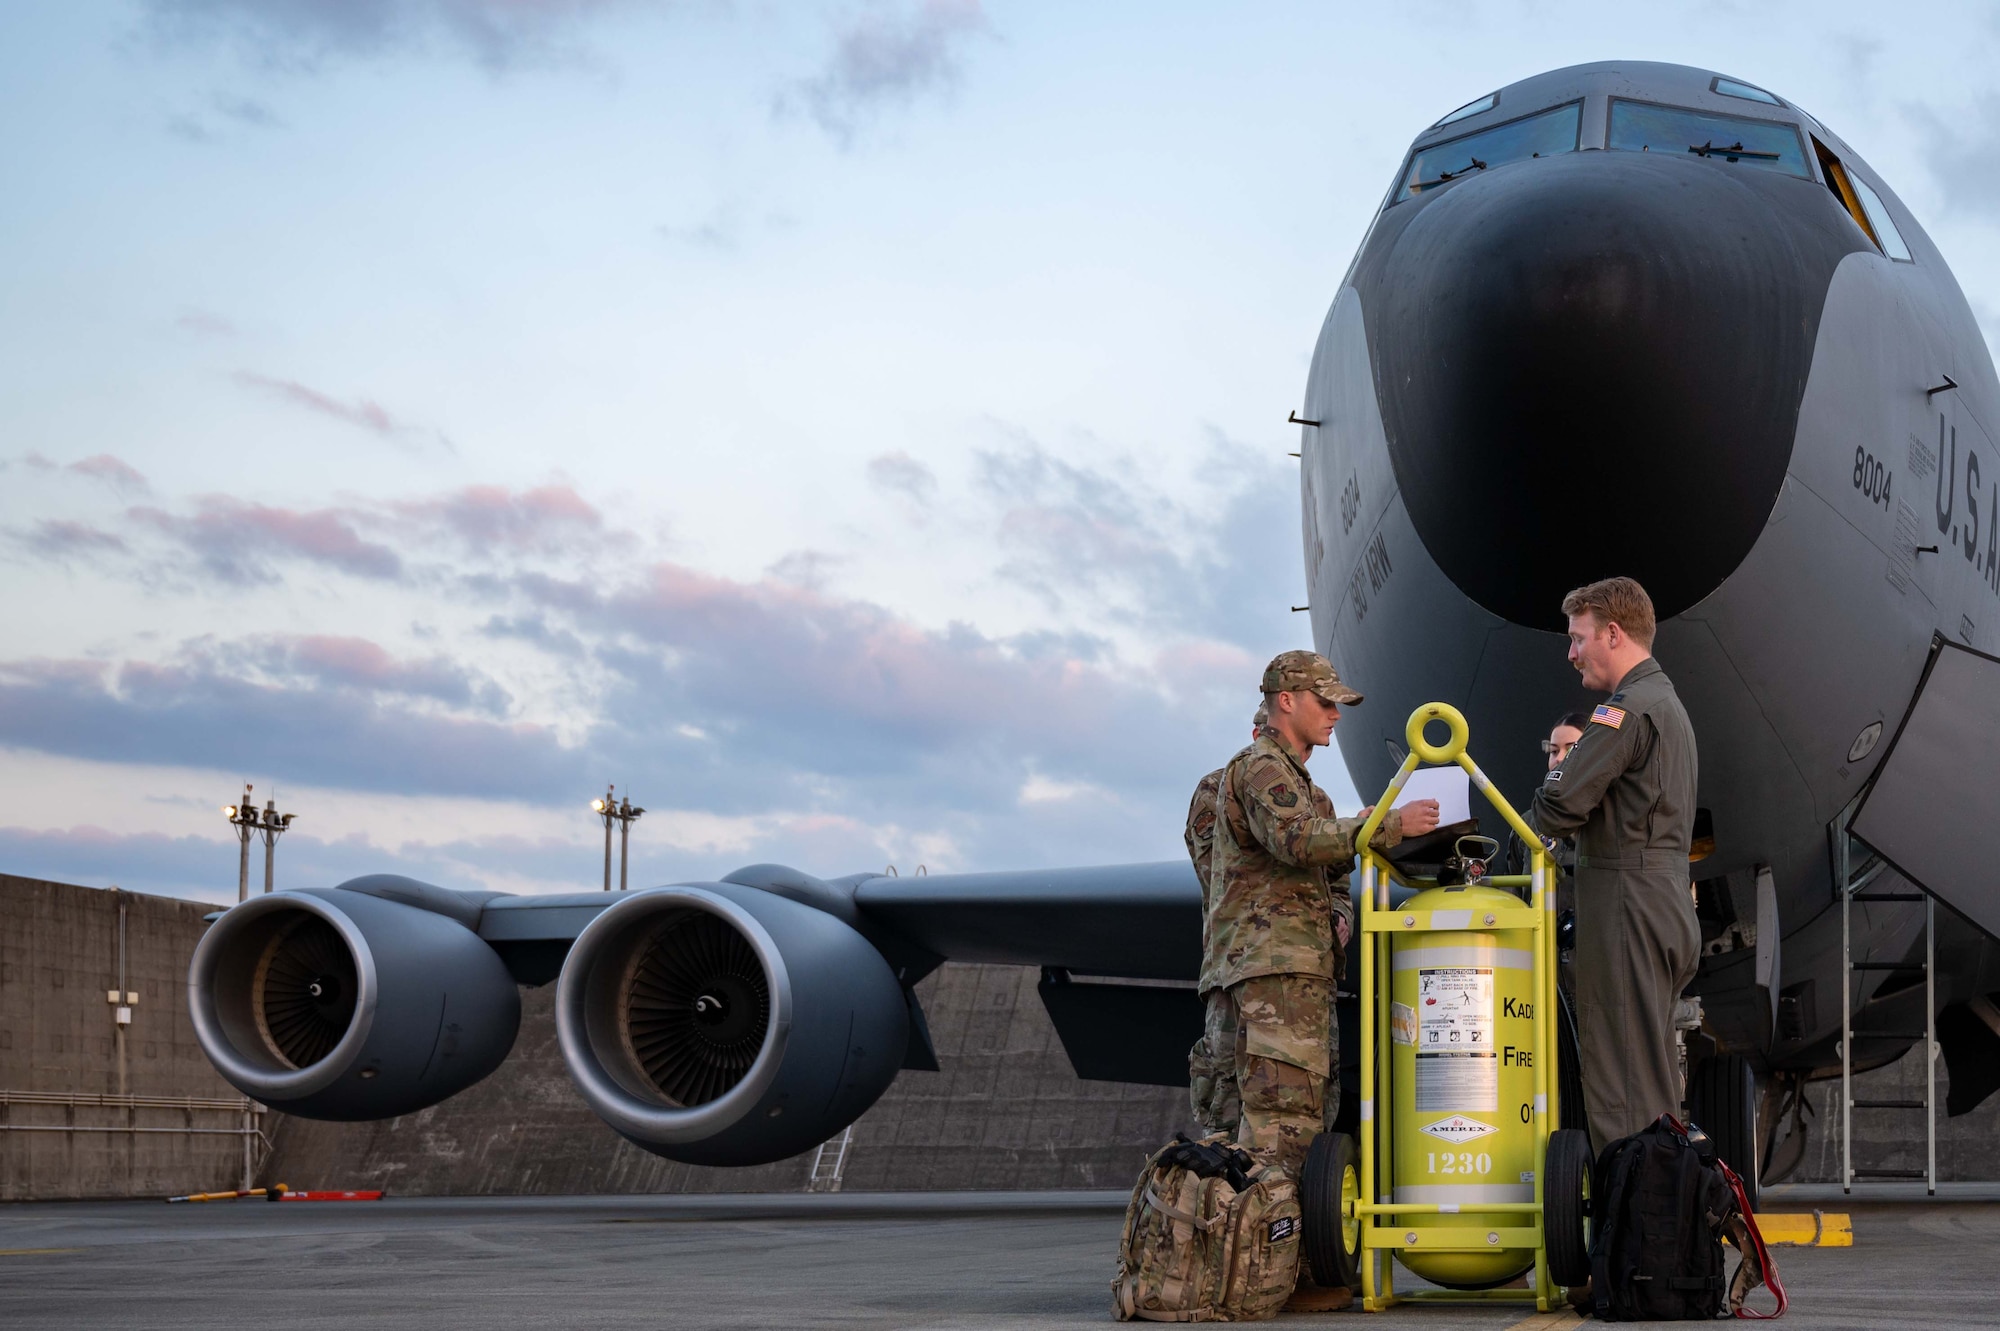 Airmen conduct preflight checks on an aircraft